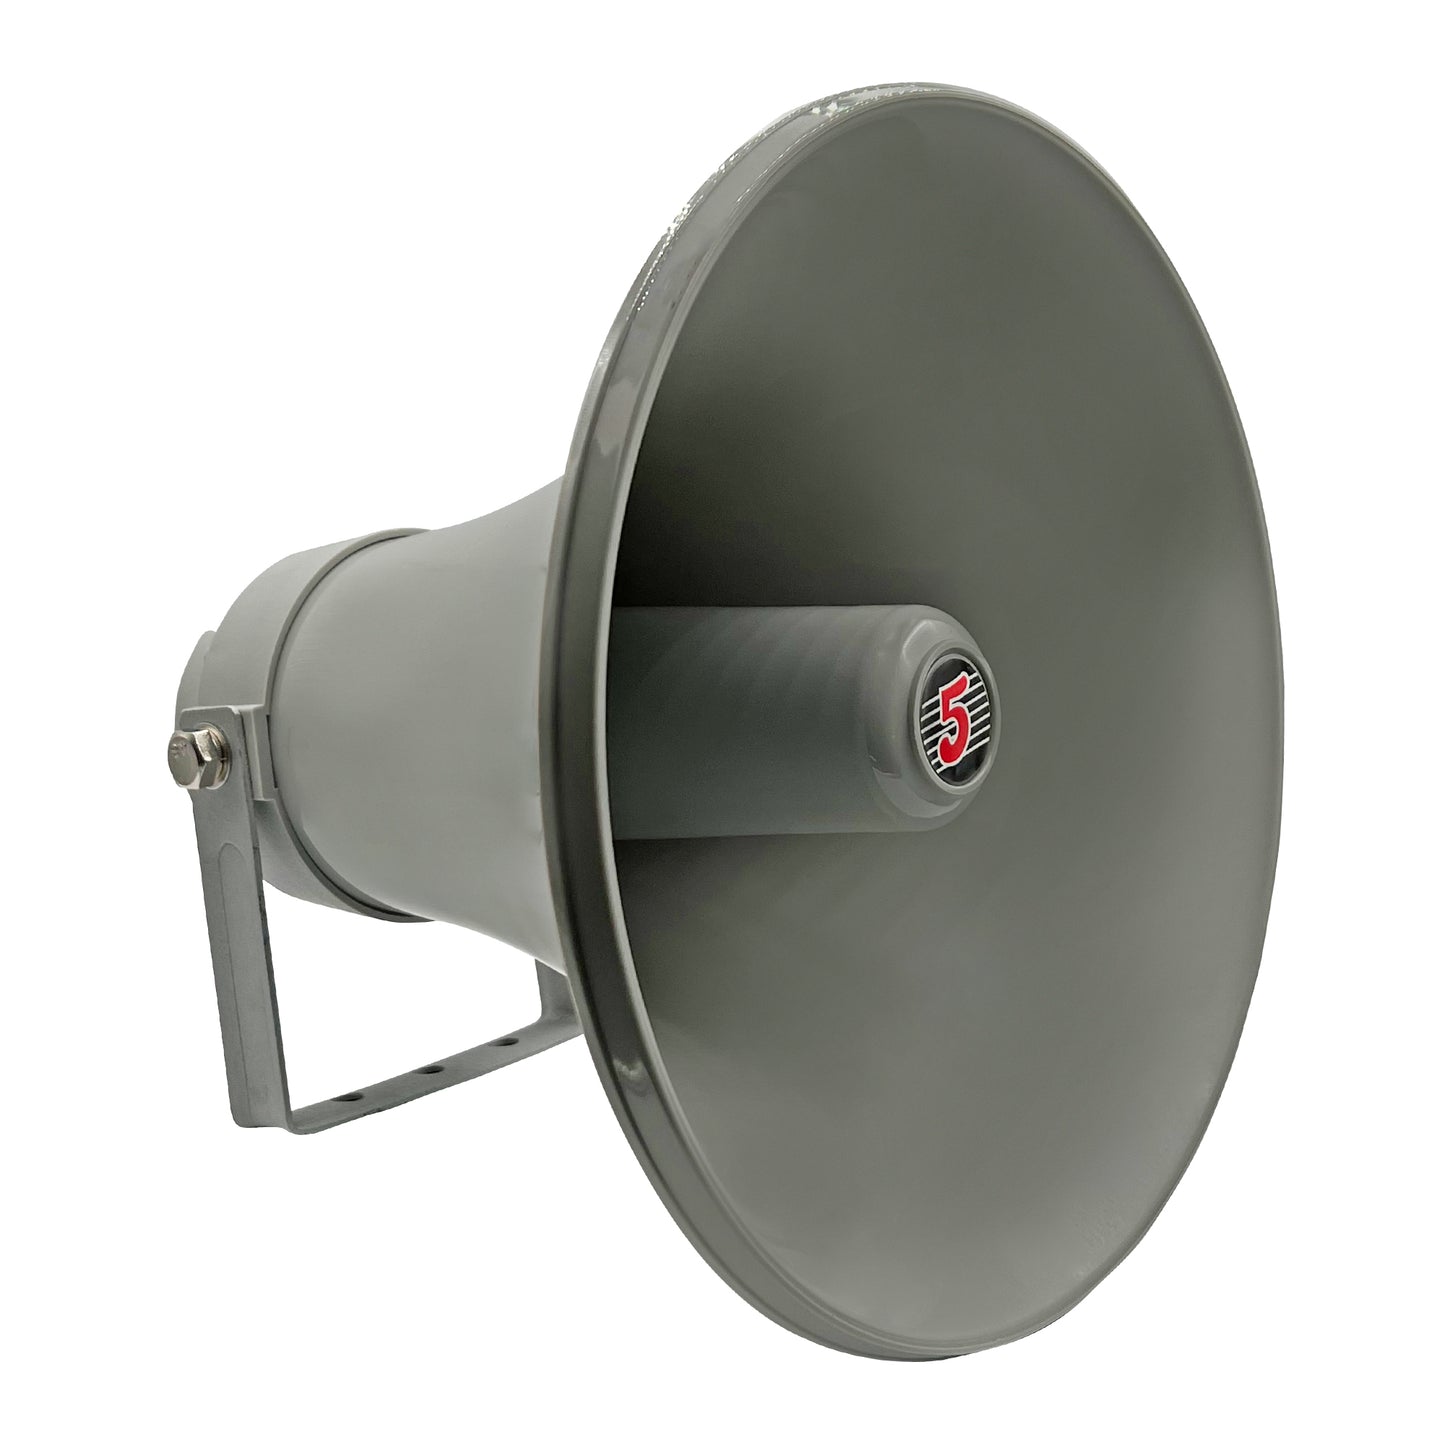 Indoor Outdoor PA Horn Circular Speaker - 12" Inch 35 Watt Power Compact Loud Sound Megaphone Driver Horns w/ 400Hz-5KHz Frequency, 8 Ohm Waterproof Weatherproof  | Vehicle SIREN - (Gray) Grey UHC 300